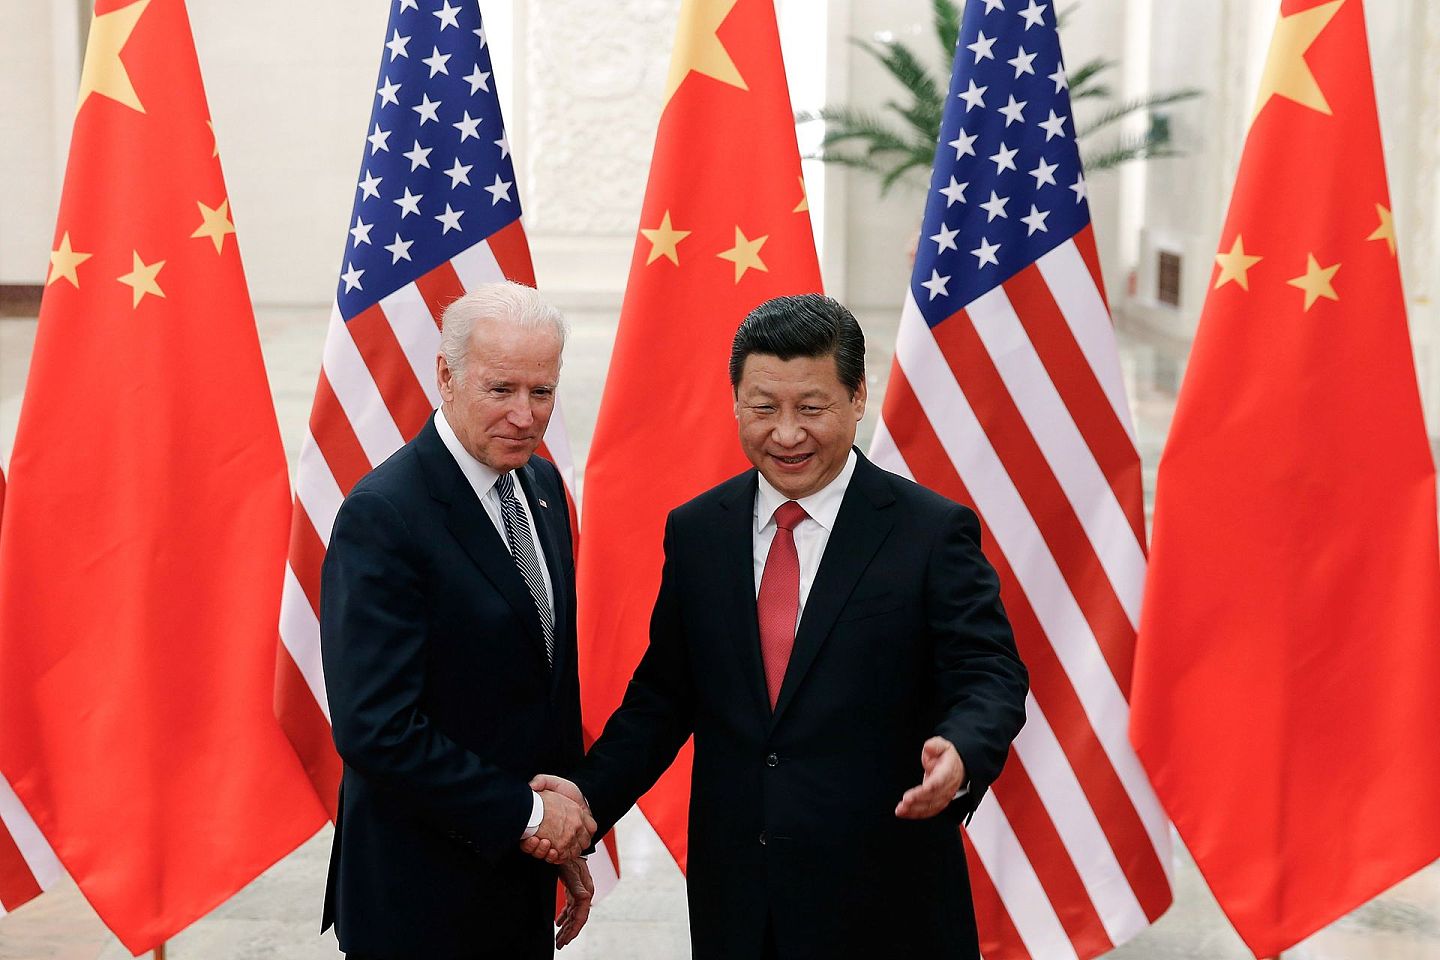 拜登时代的中美关系走向何方，是人们普遍关心的议题。图为2013年12月4日，中国国家主席习近平与当时的美国副总统拜登在北京人民大会堂握手。 (AP)